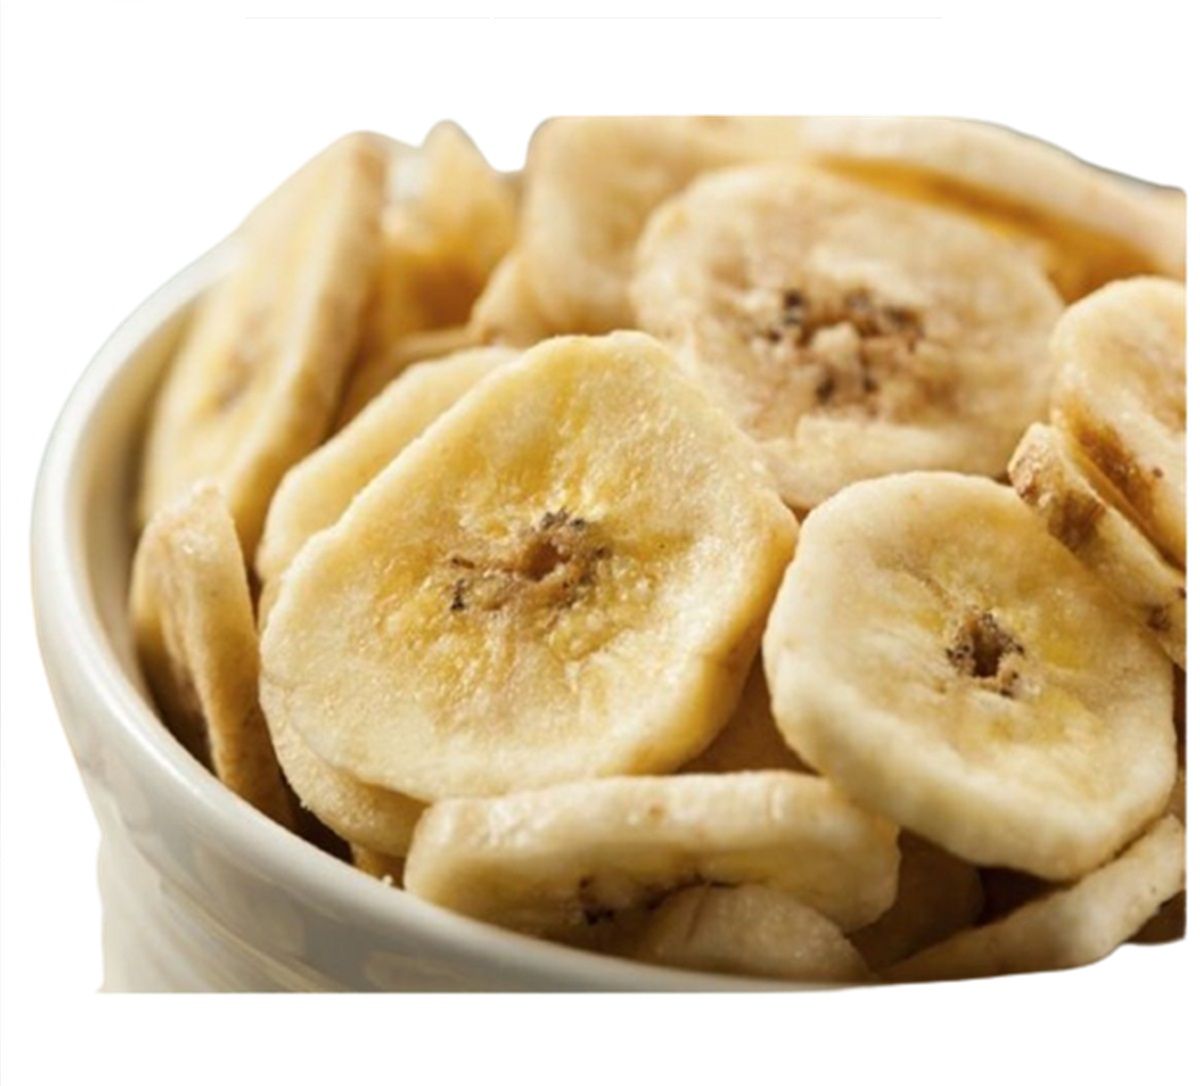 [ELIMINADO] Bananitas chips Desecadas de Indonesia x 100 gr